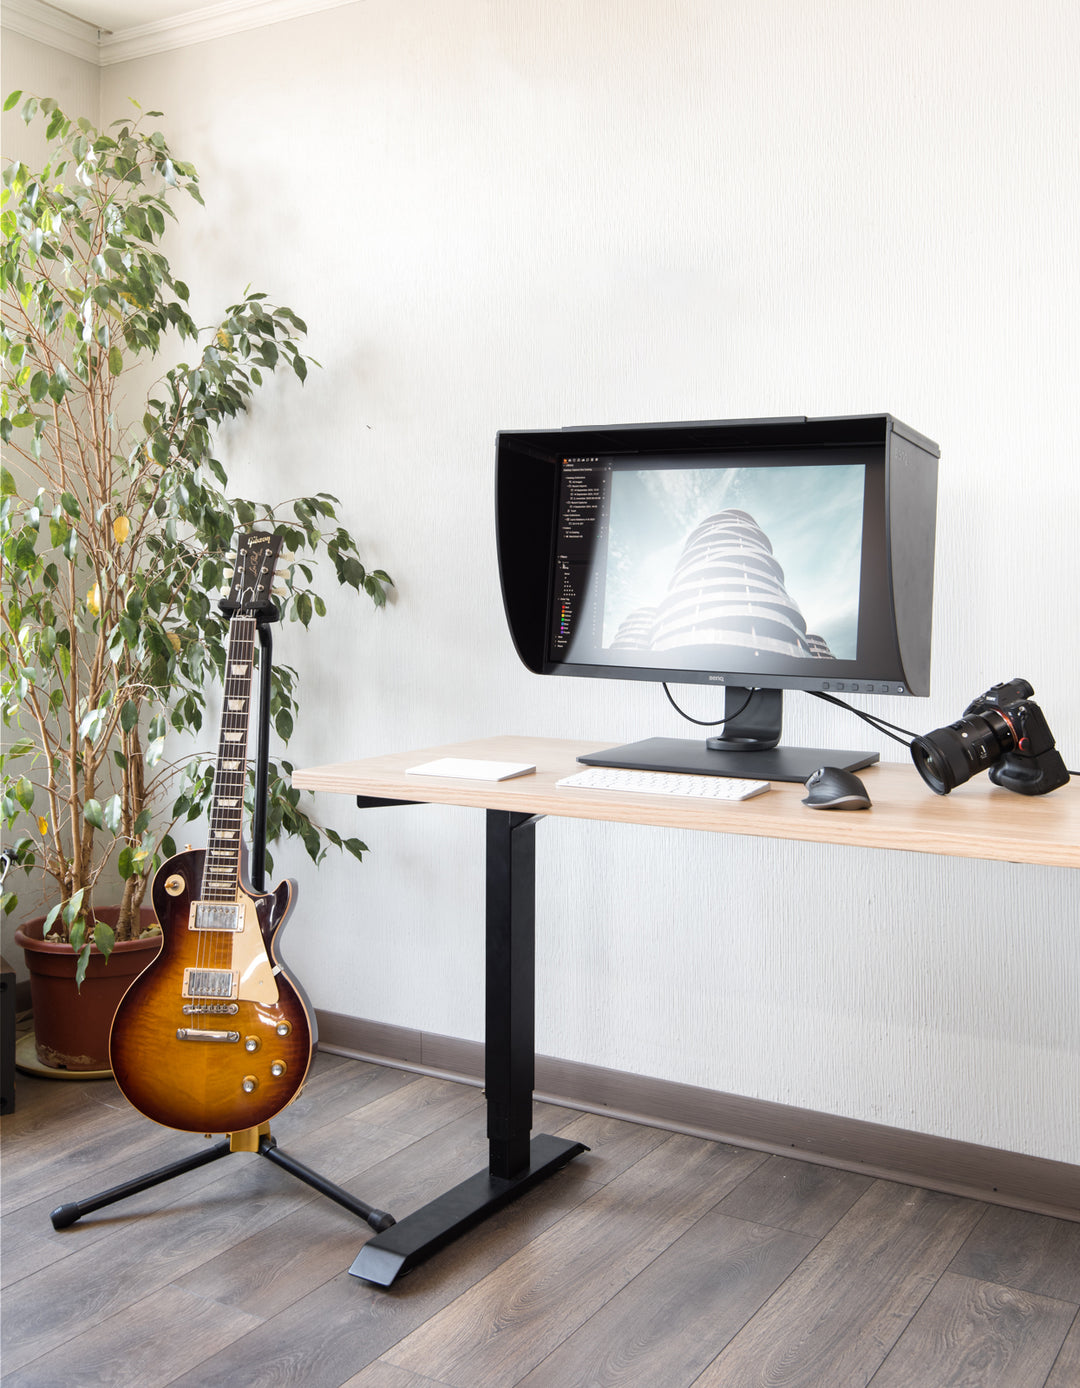 Estación de trabajo de un artista junto a su pantalla de edición, cámara fotográfica, guitarra y escritorio eléctrico